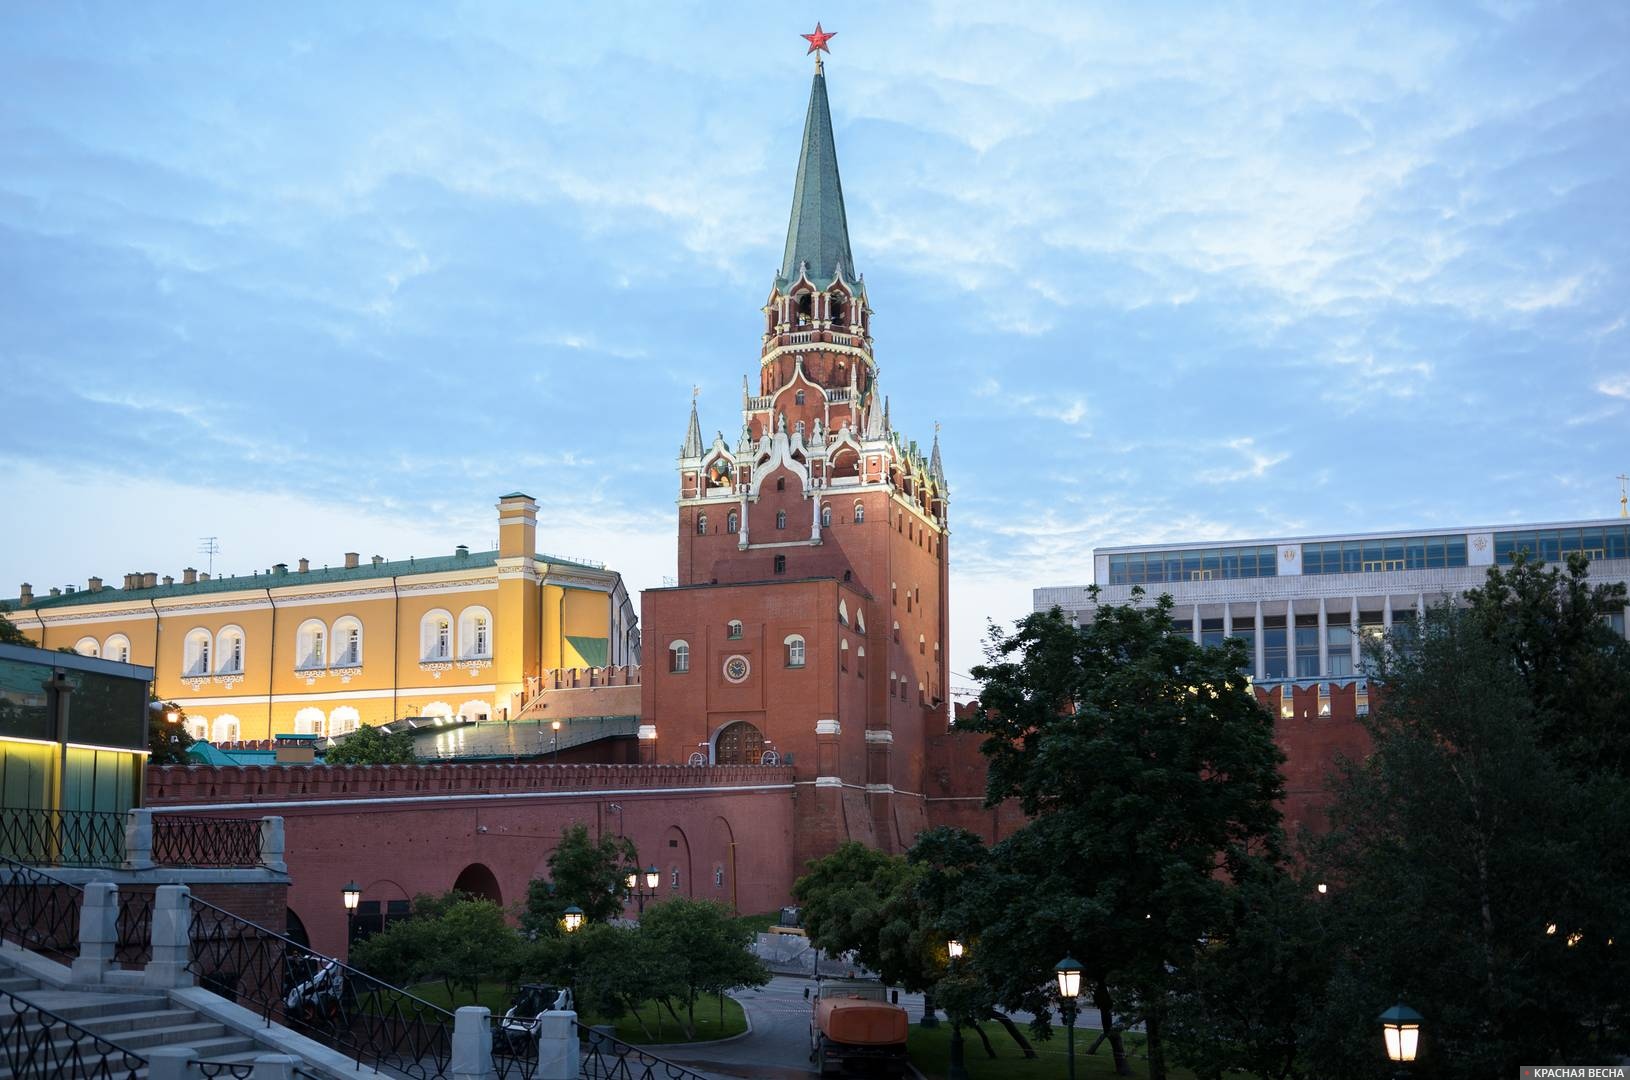 Троицкая башня, Кремль, Москва. 11.07.2014